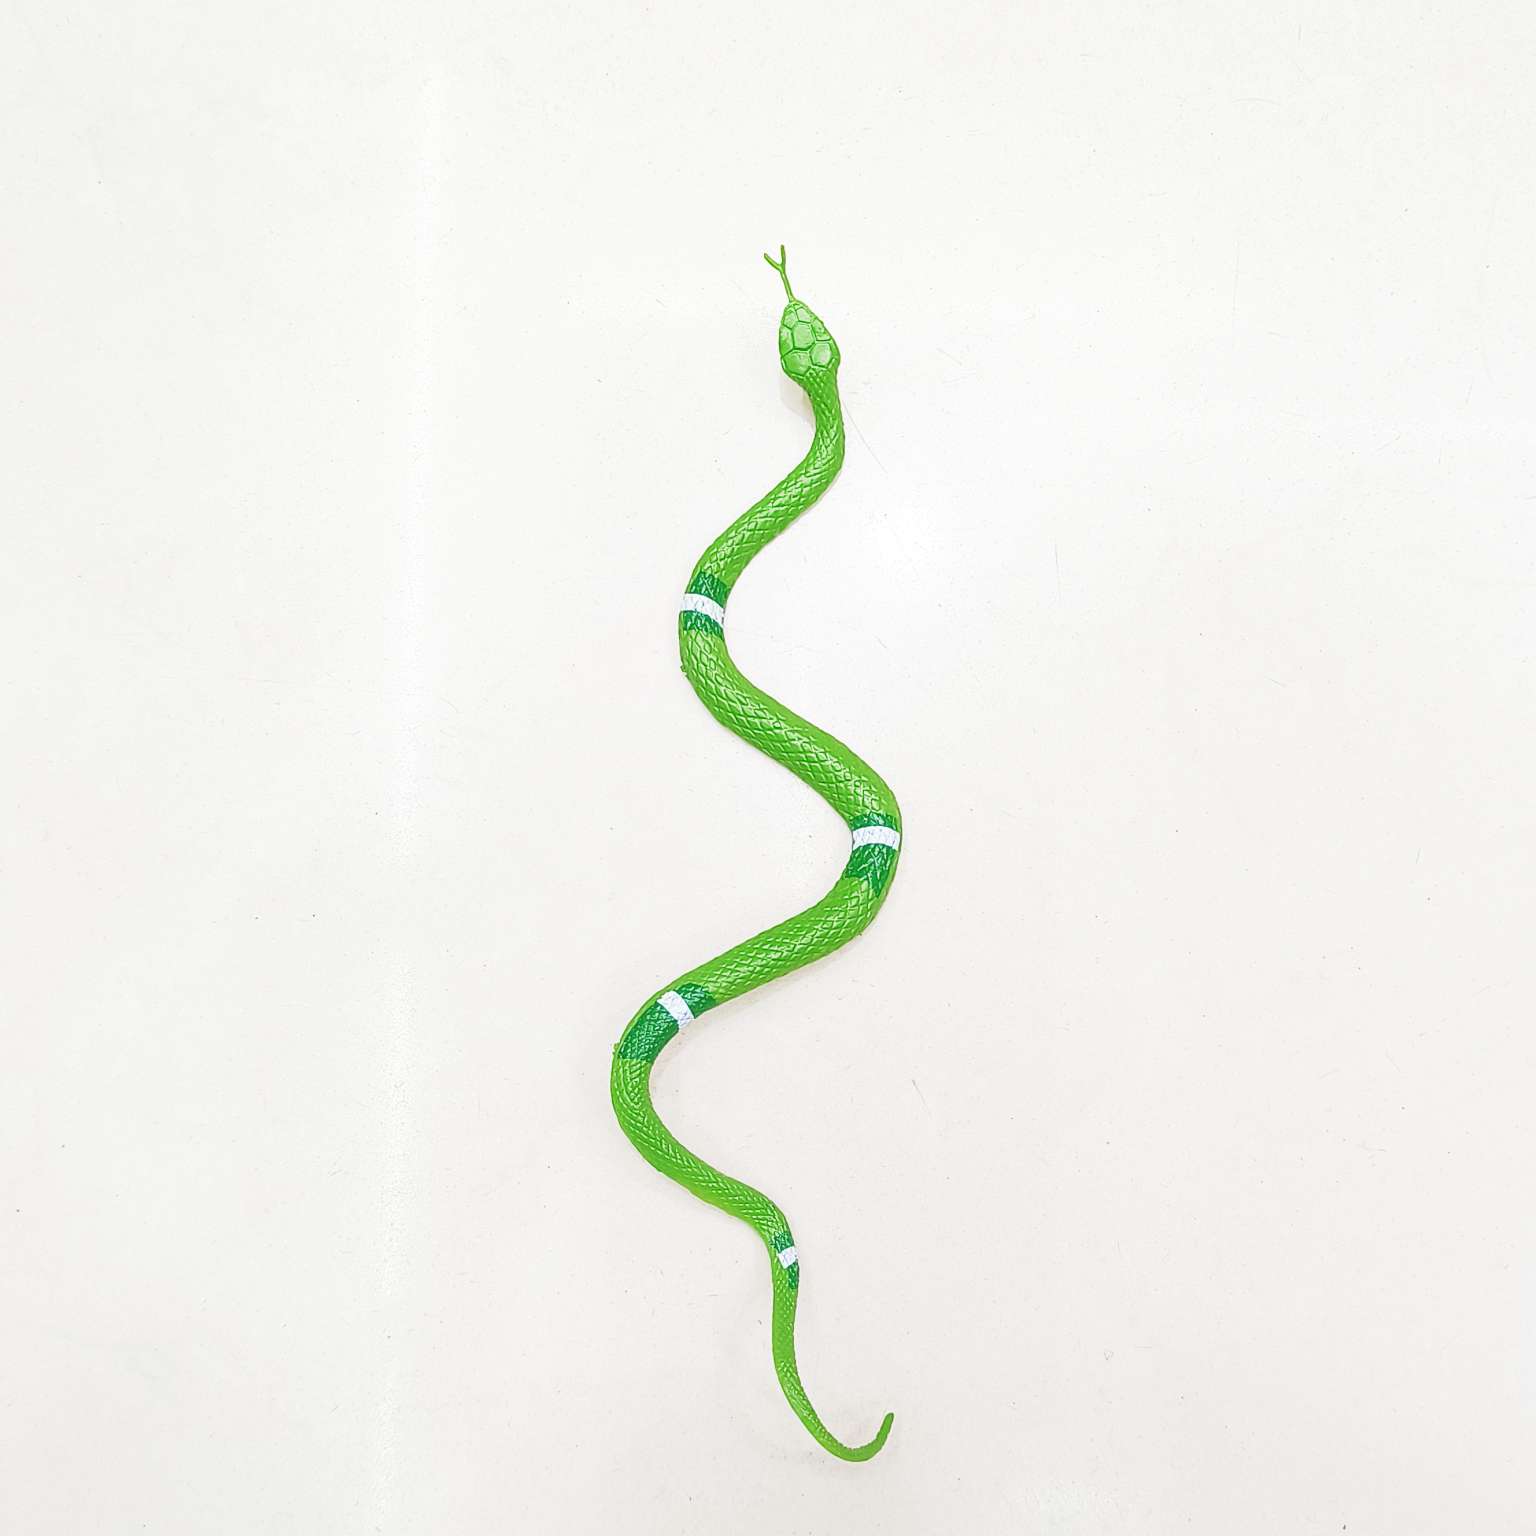 仿真动物蛇玩具塑胶模型爬行动物整蛊科教儿童认证摆件其他配件详情图5